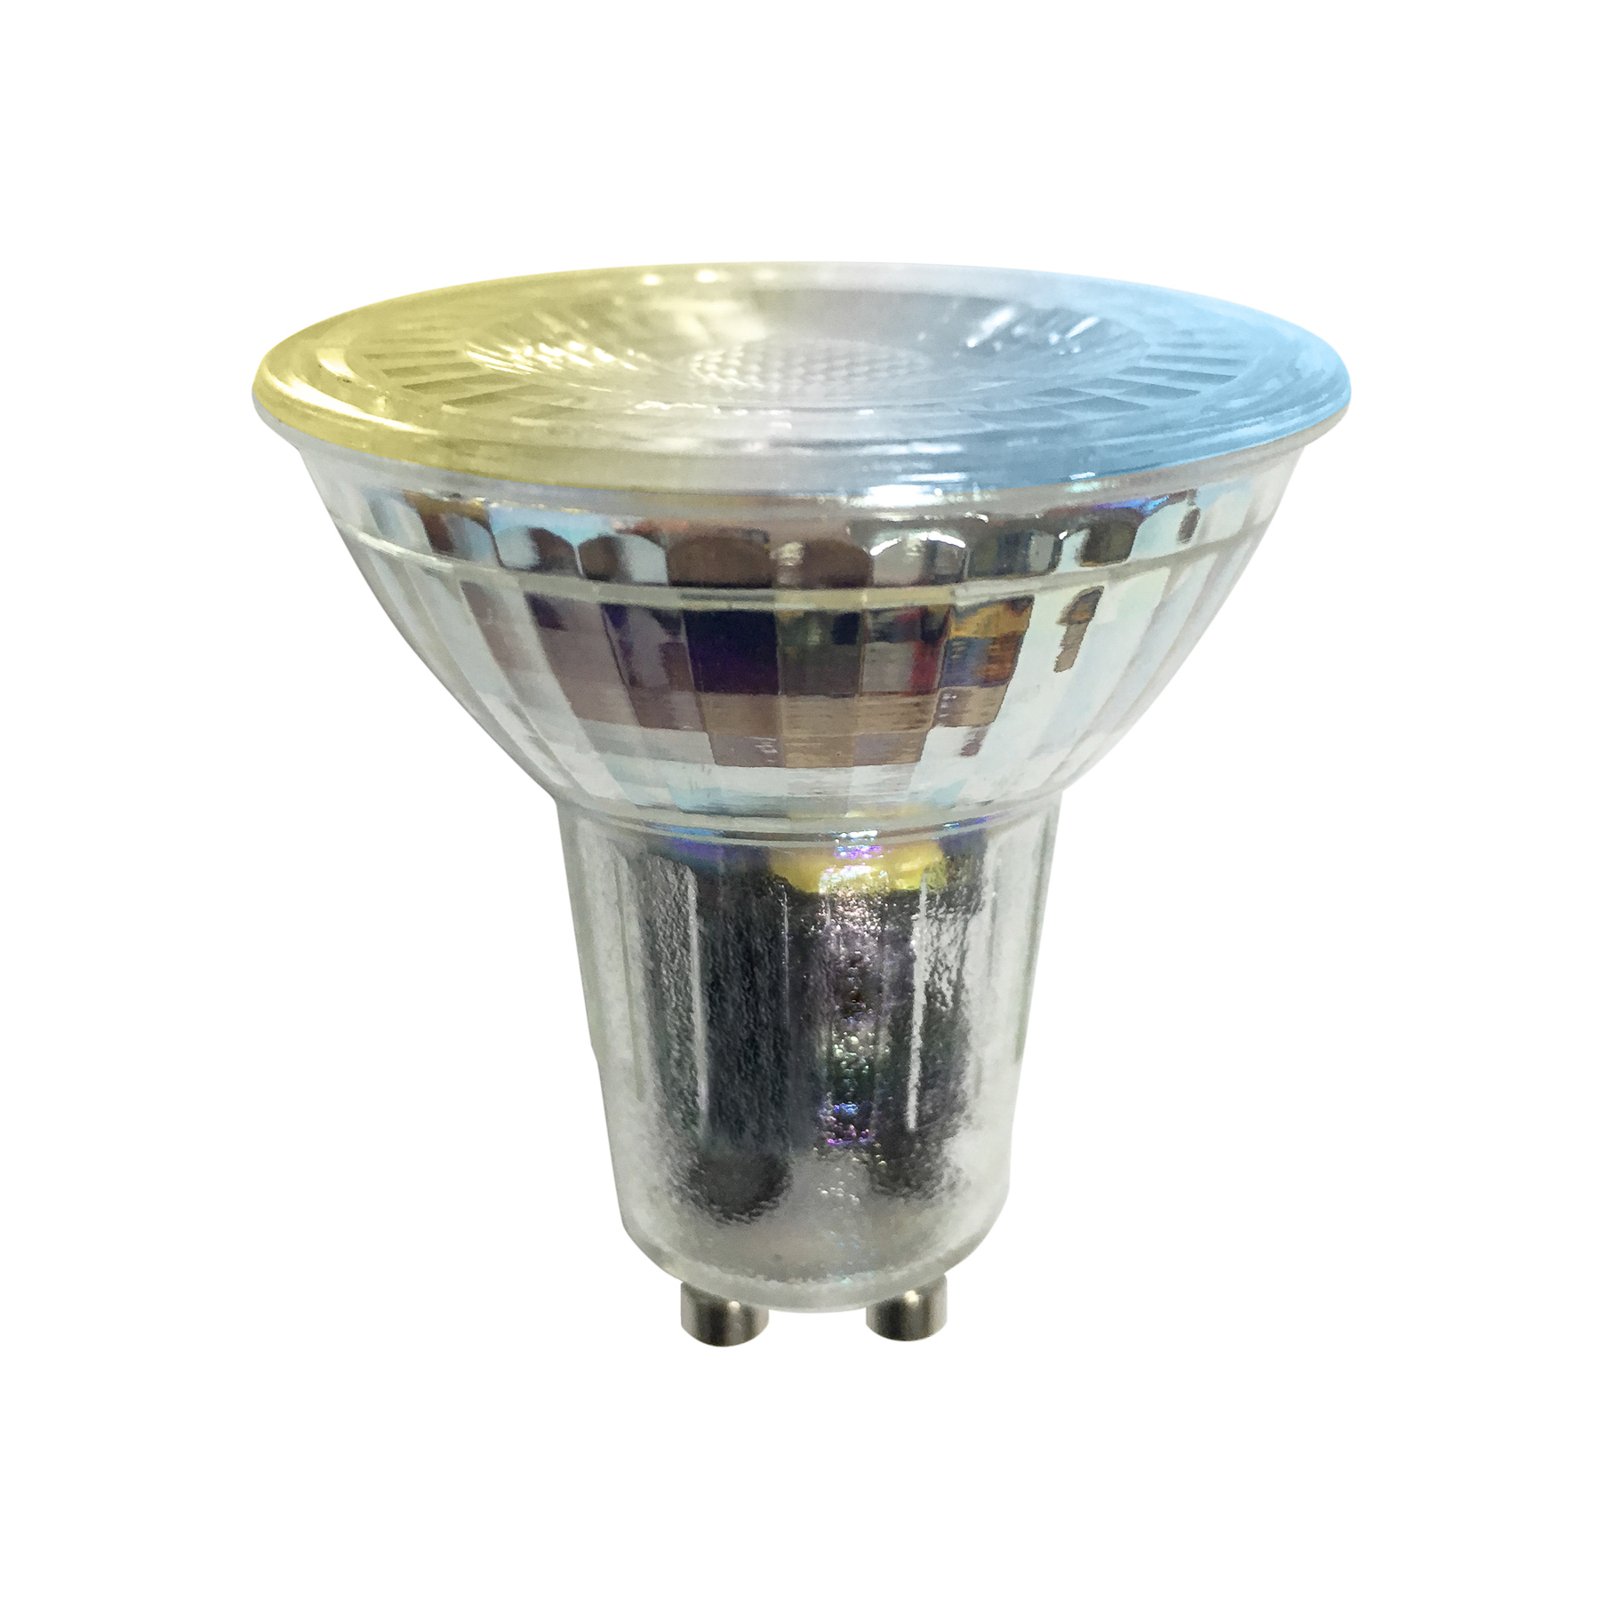 LUUMR Smart LED bulb 3pcs GU10 glass 4,7W clear Tuya